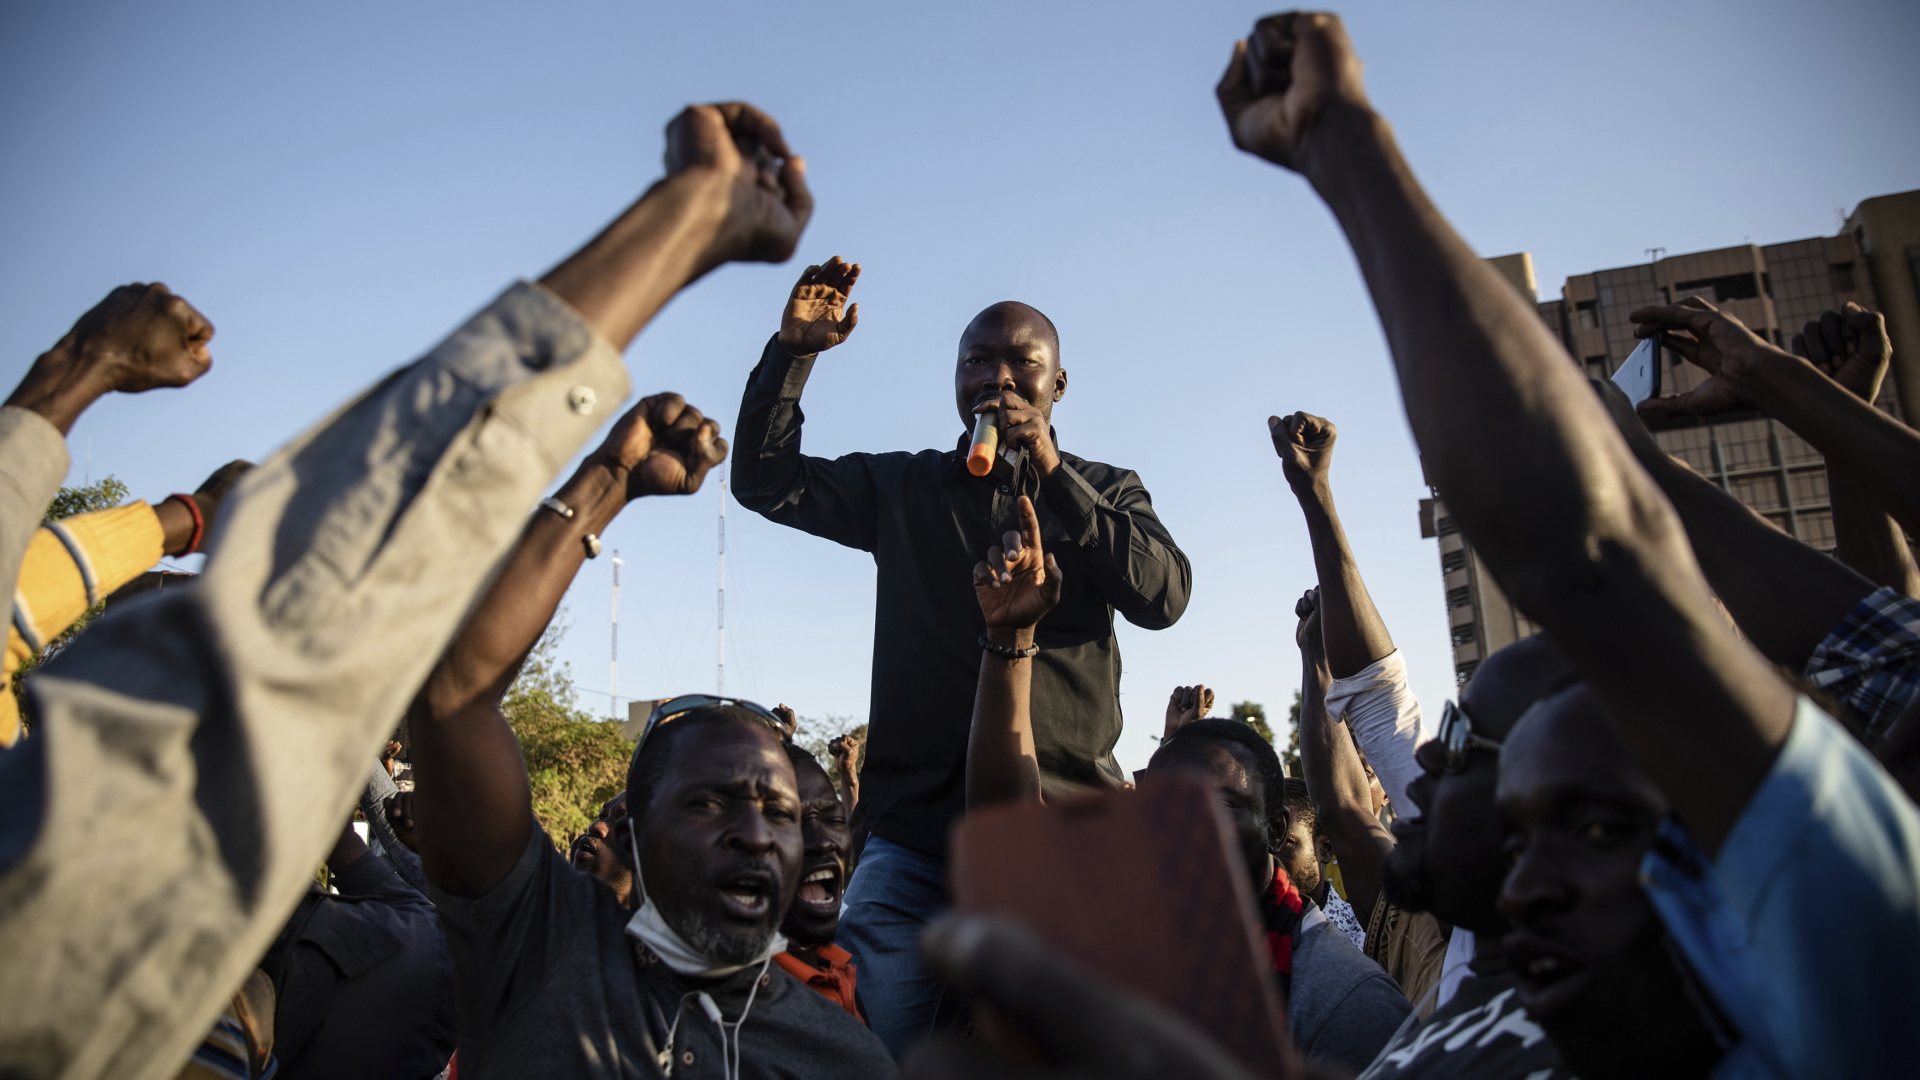 Jubelnde Menschen in Burkina Fasos Hauptstadt Ouagadougou, nachdem das Militär die Macht übernommen hat. | dpa